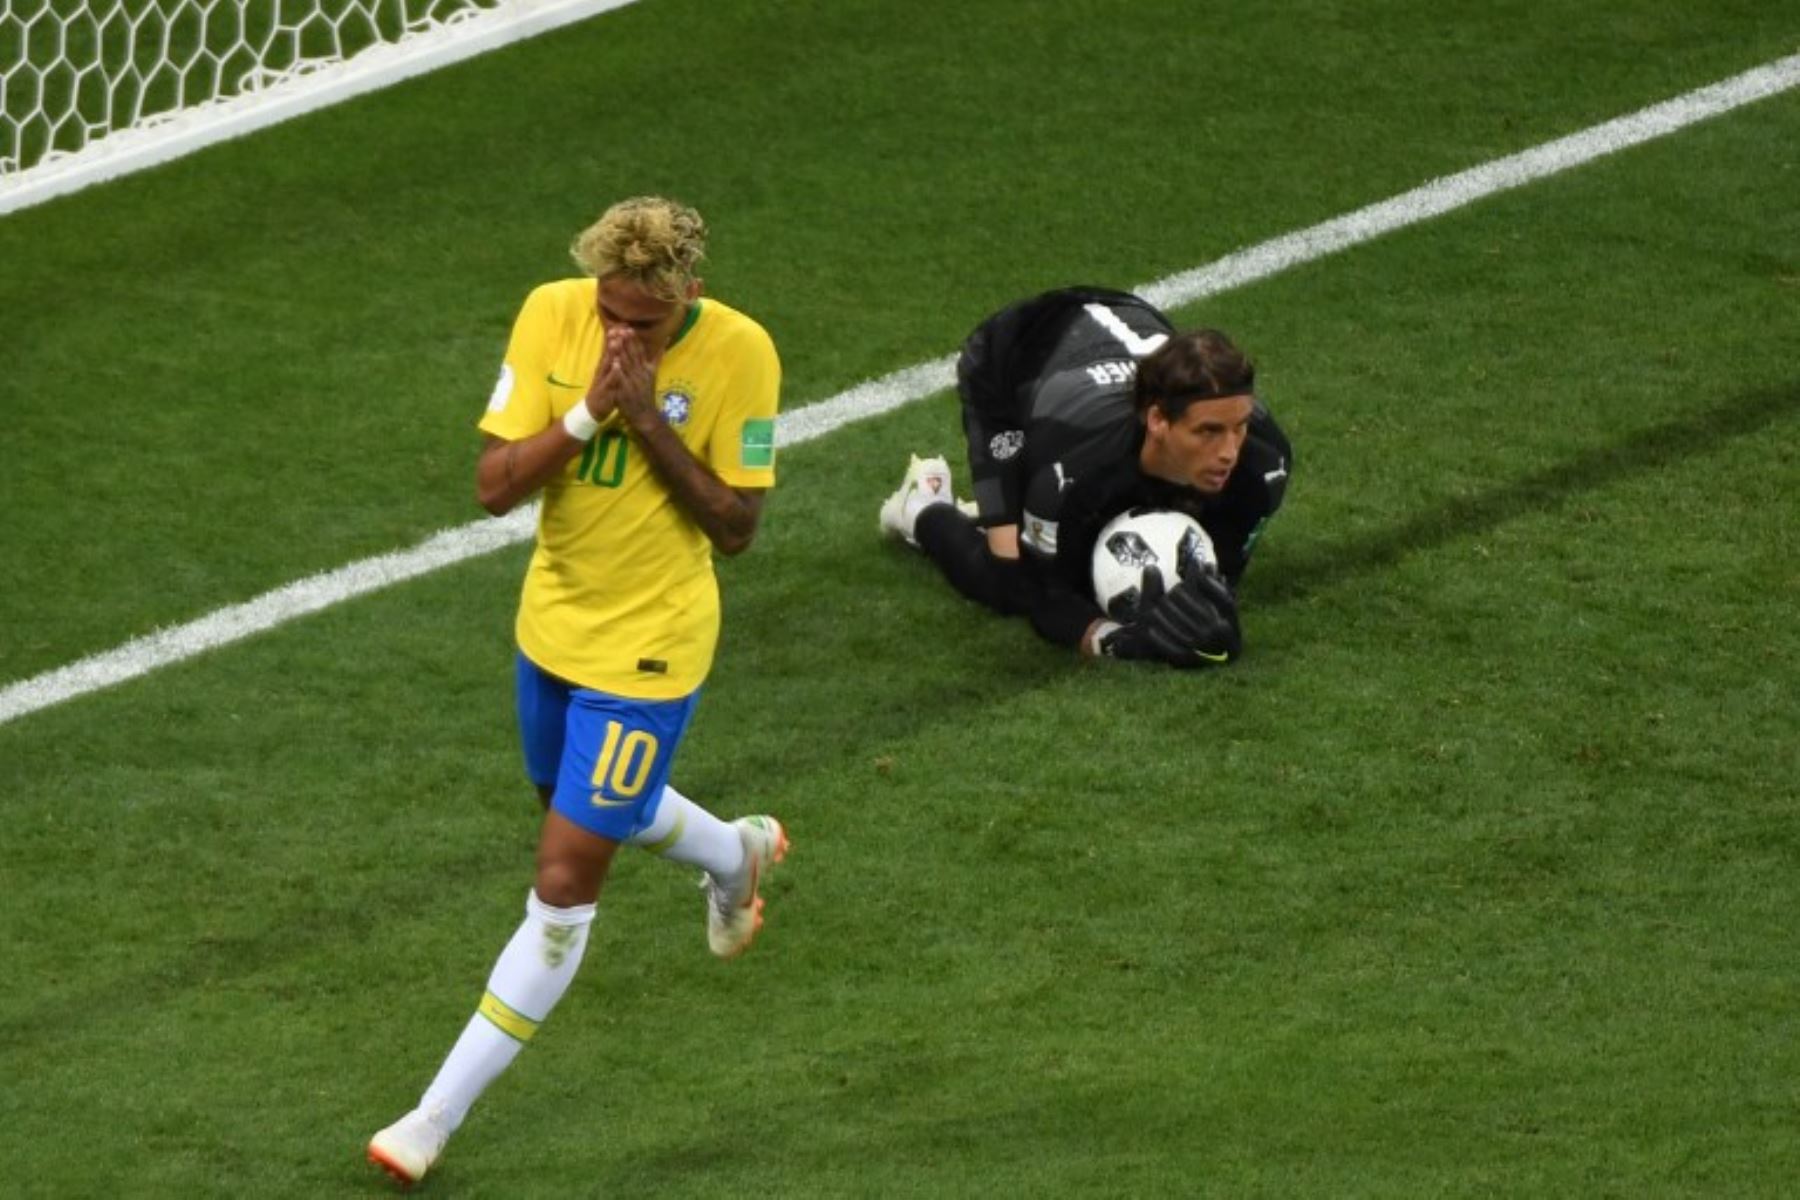 El portero de Suiza Yann Sommer hace un salvamento junto al delantero brasileño Neymar durante el partido de fútbol del Grupo E de la Copa Mundial Rusia 2018 entre Brasil y Suiza.FotoAFP